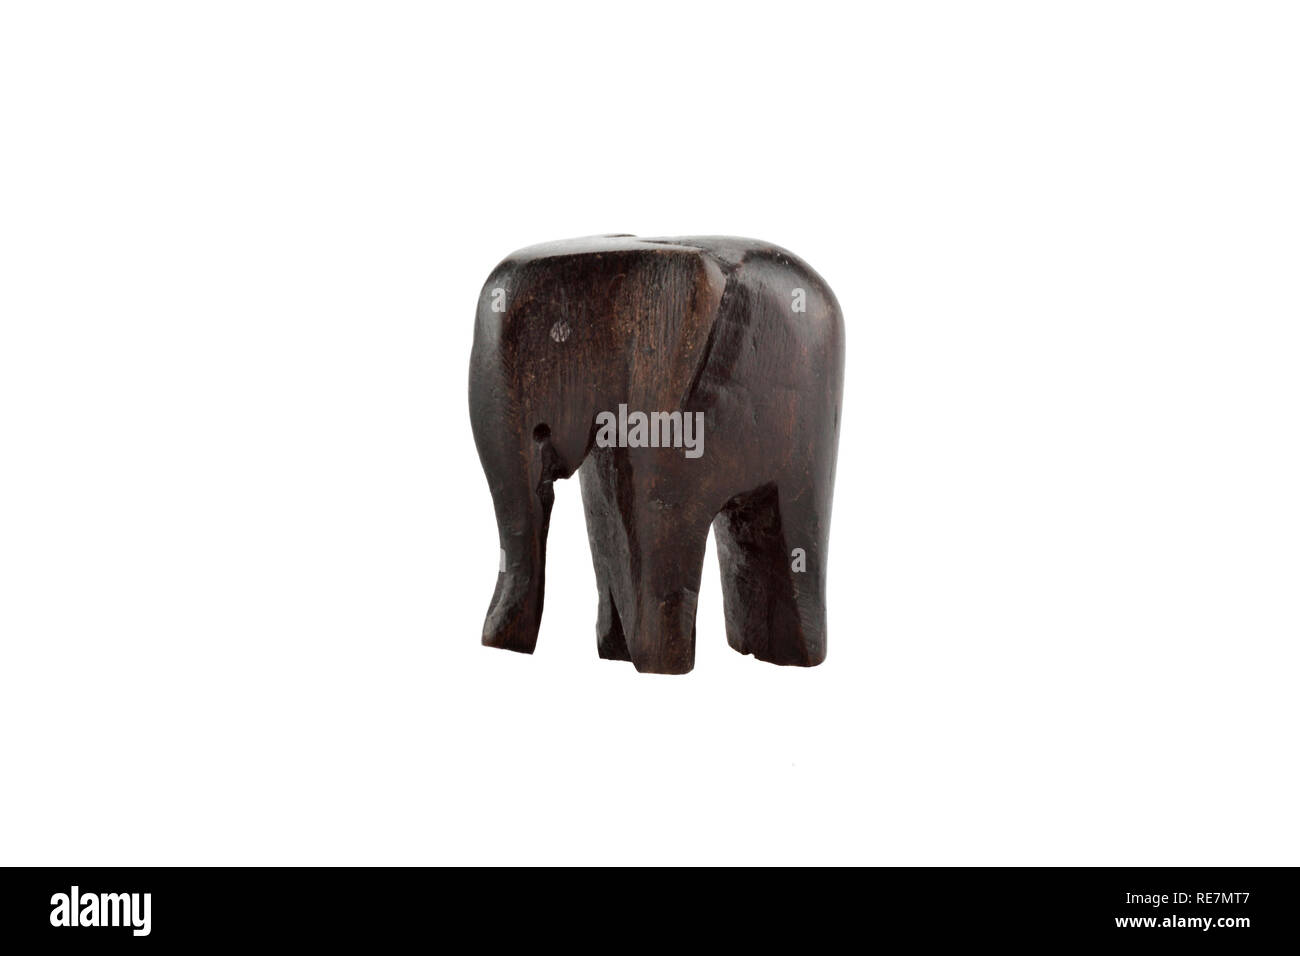 Holz- elephant Figurine auf weißem Hintergrund Stockfoto